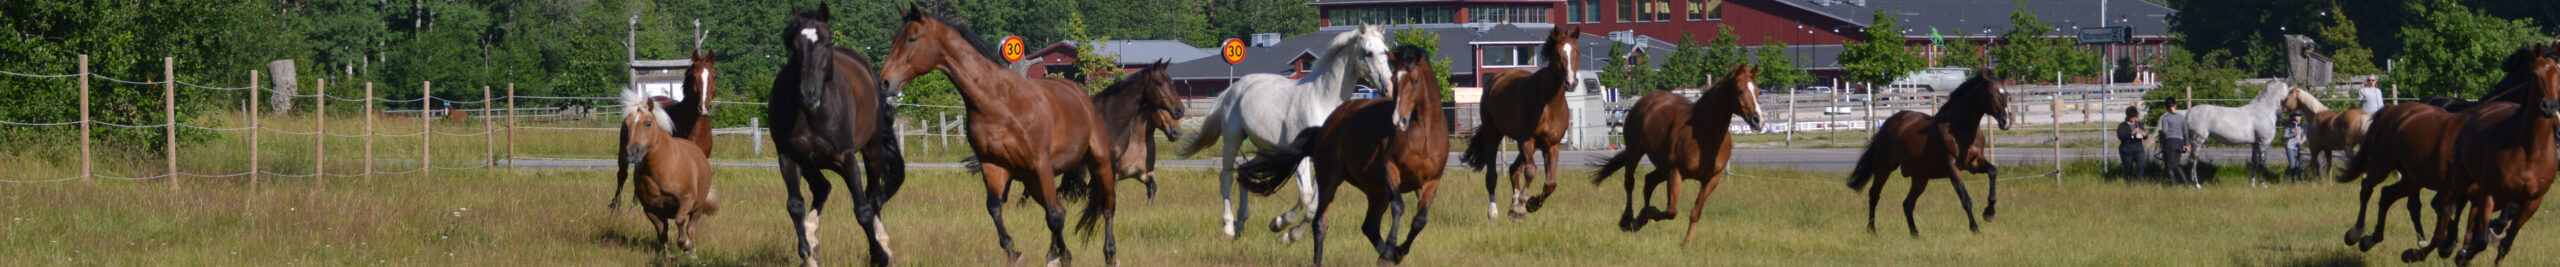 Galopperande hästar framför Smedstad Ridsportcenter.